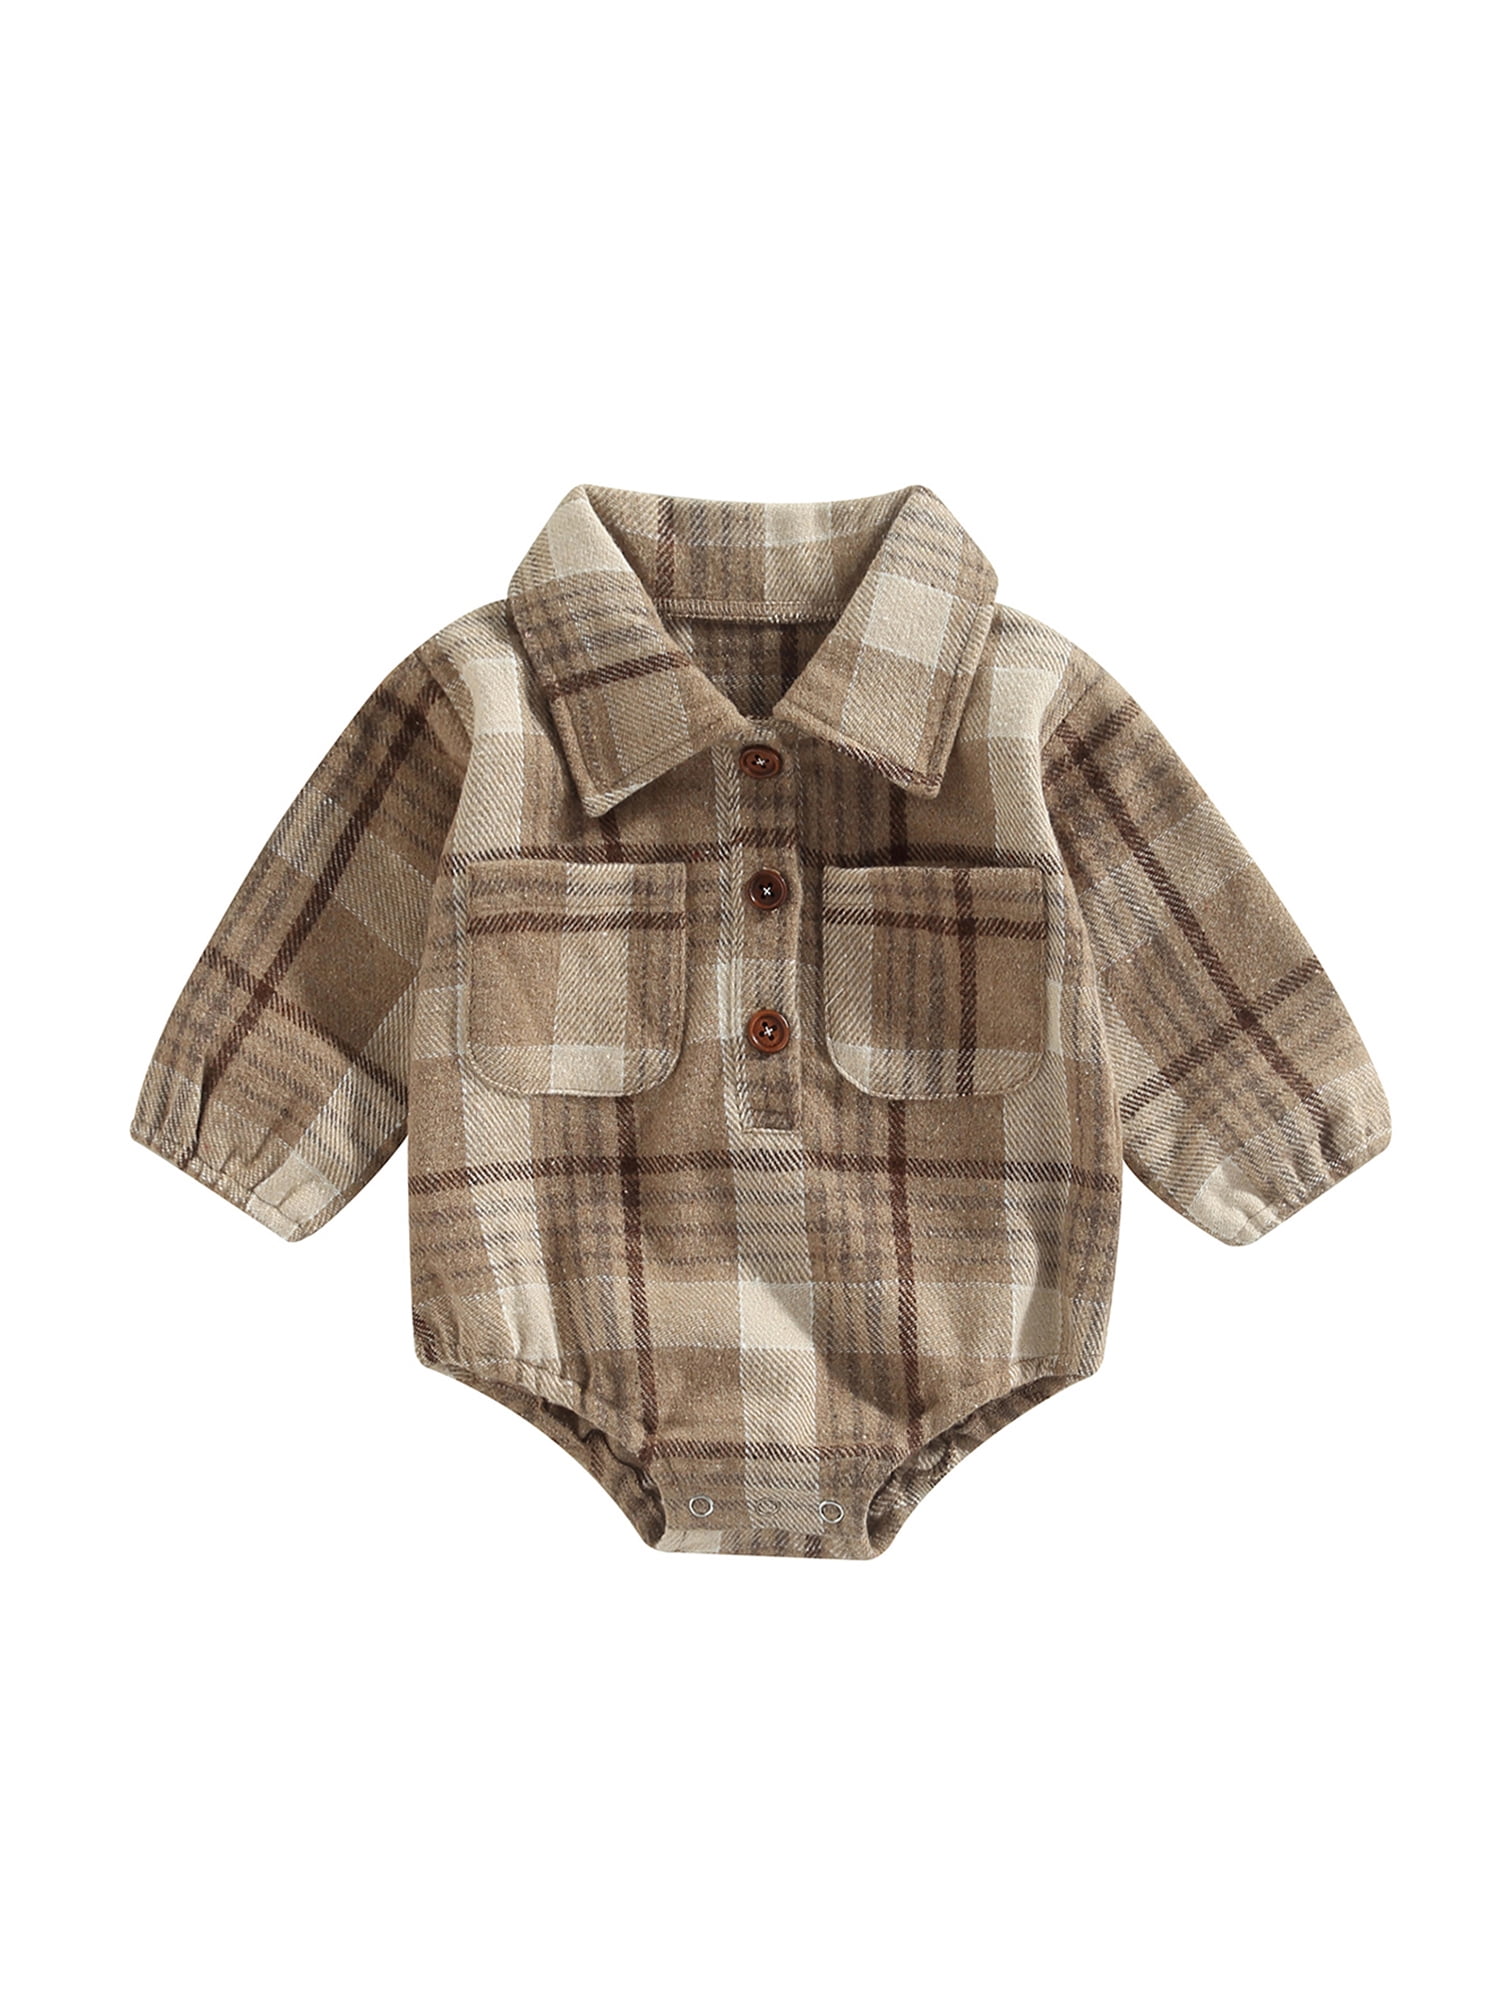 Baby Boys Plaid Cotton Button-up Shirt Romper Jumpsuit Playsuit Toddler Clothes 